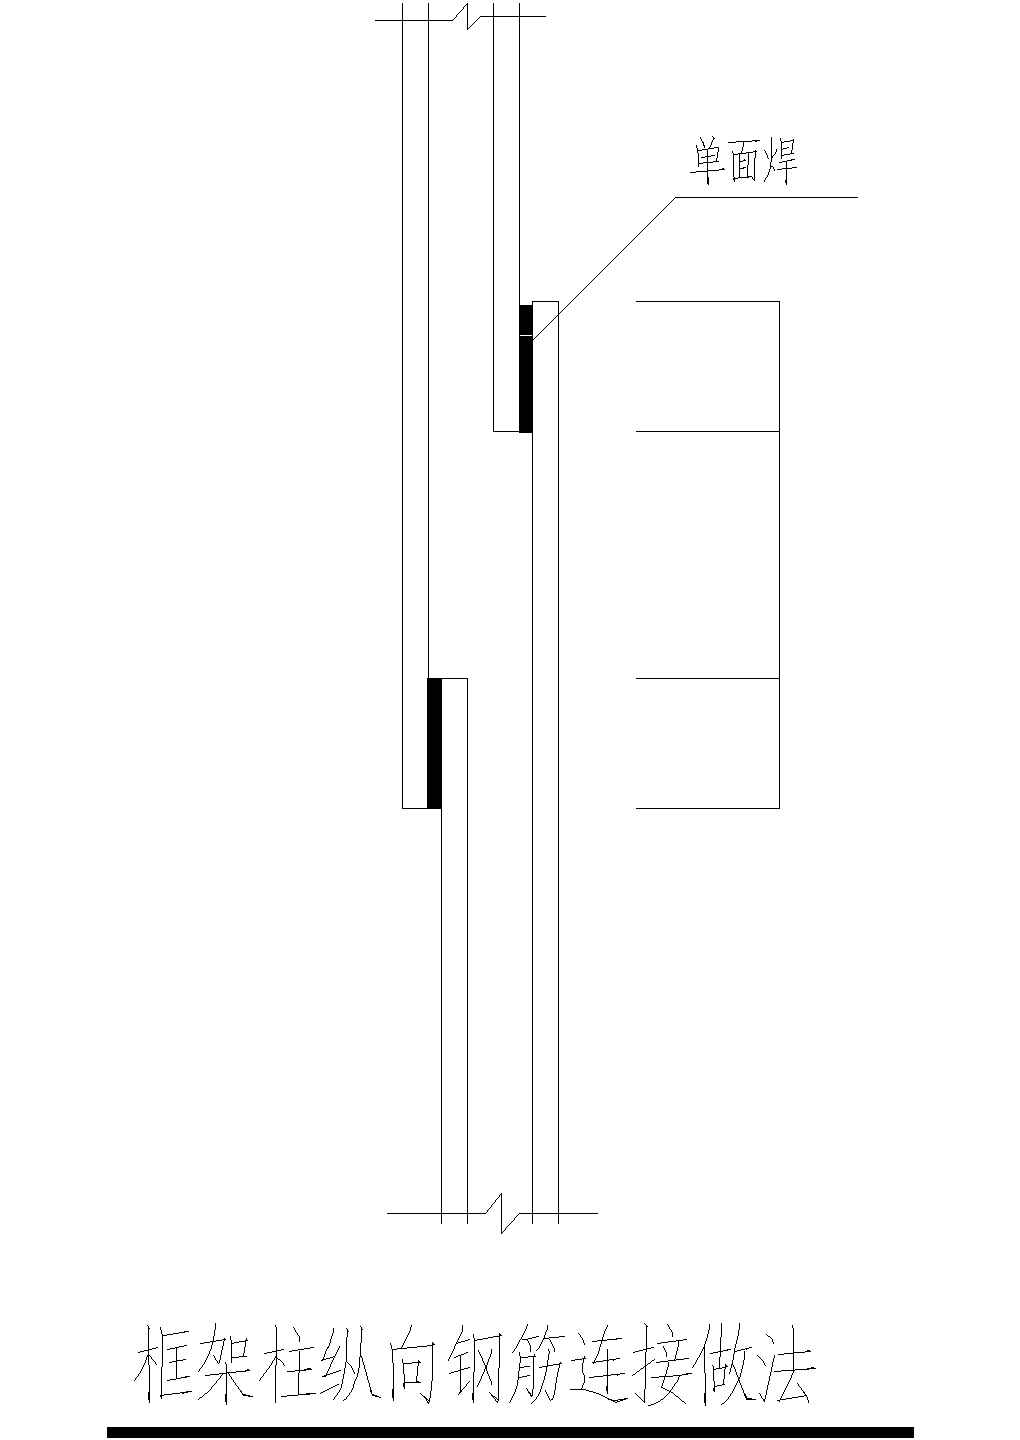 框架柱纵向钢筋连接做法CAD节点详图-图一